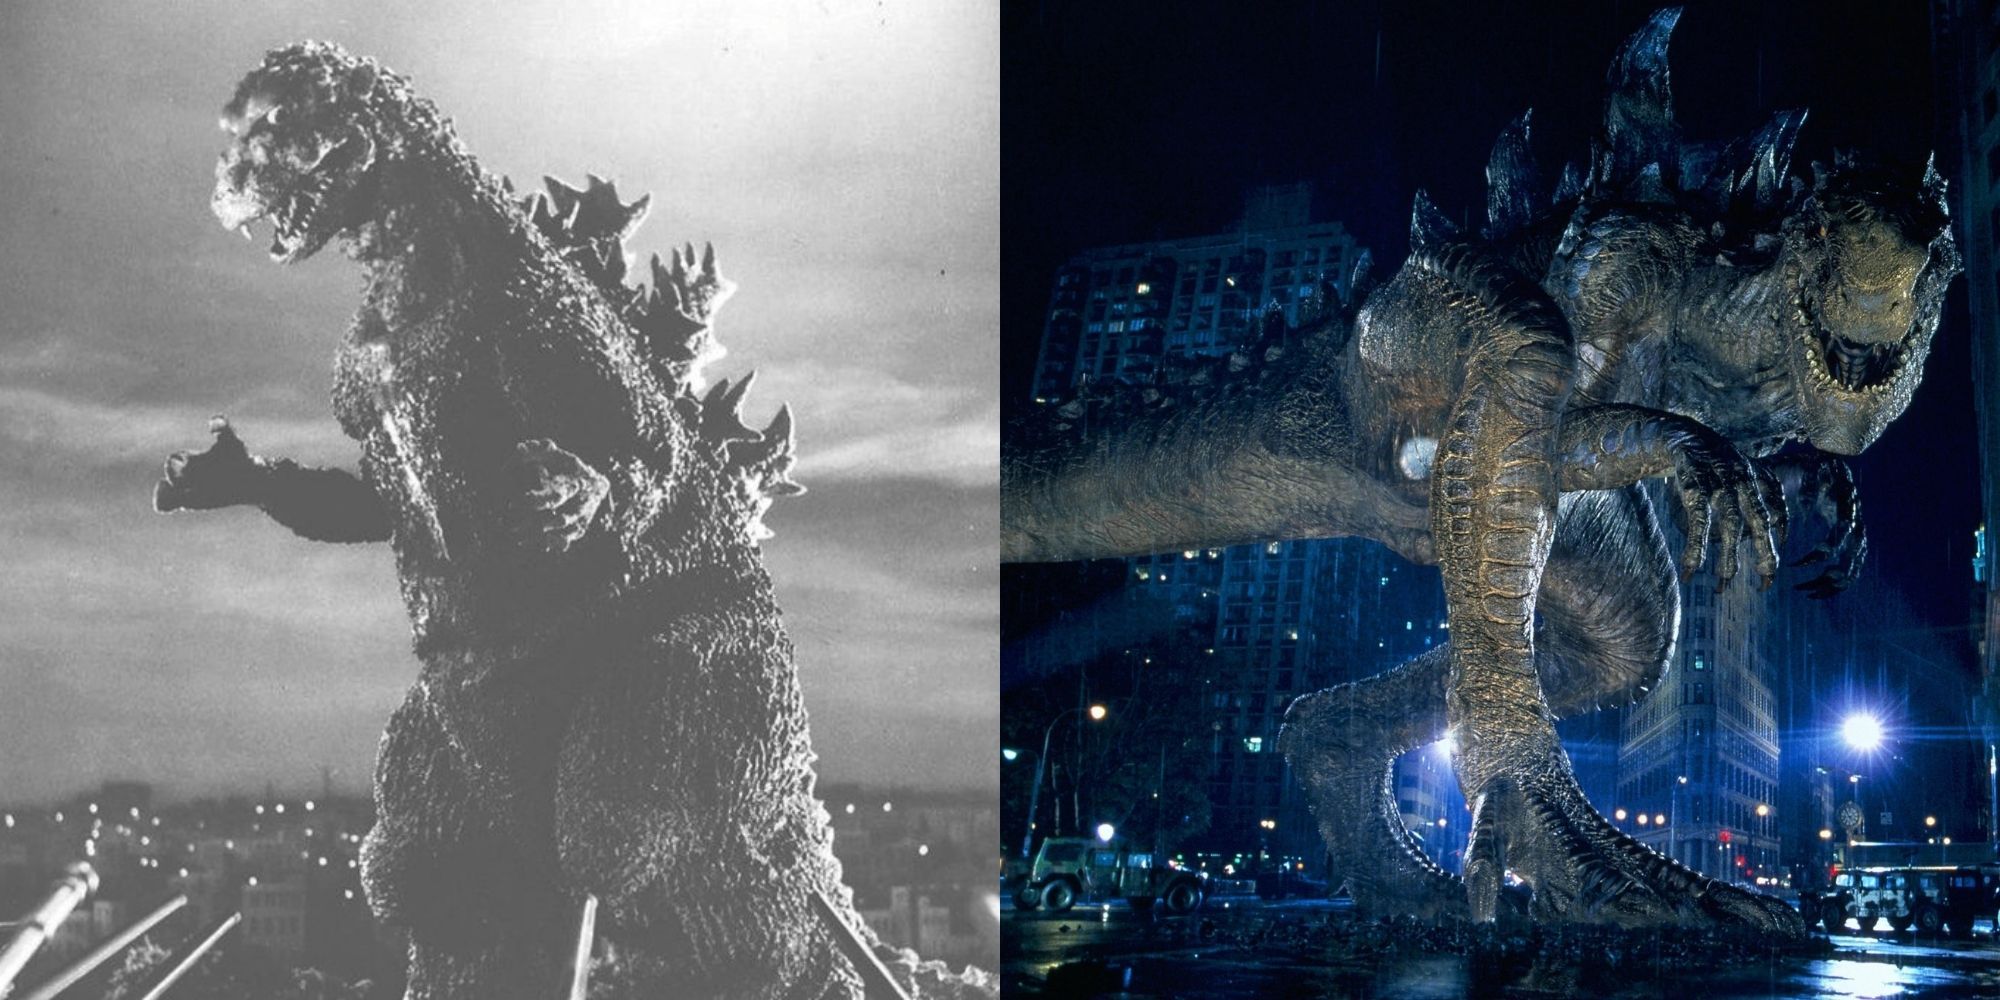 Godzilla (1954) and (1998)